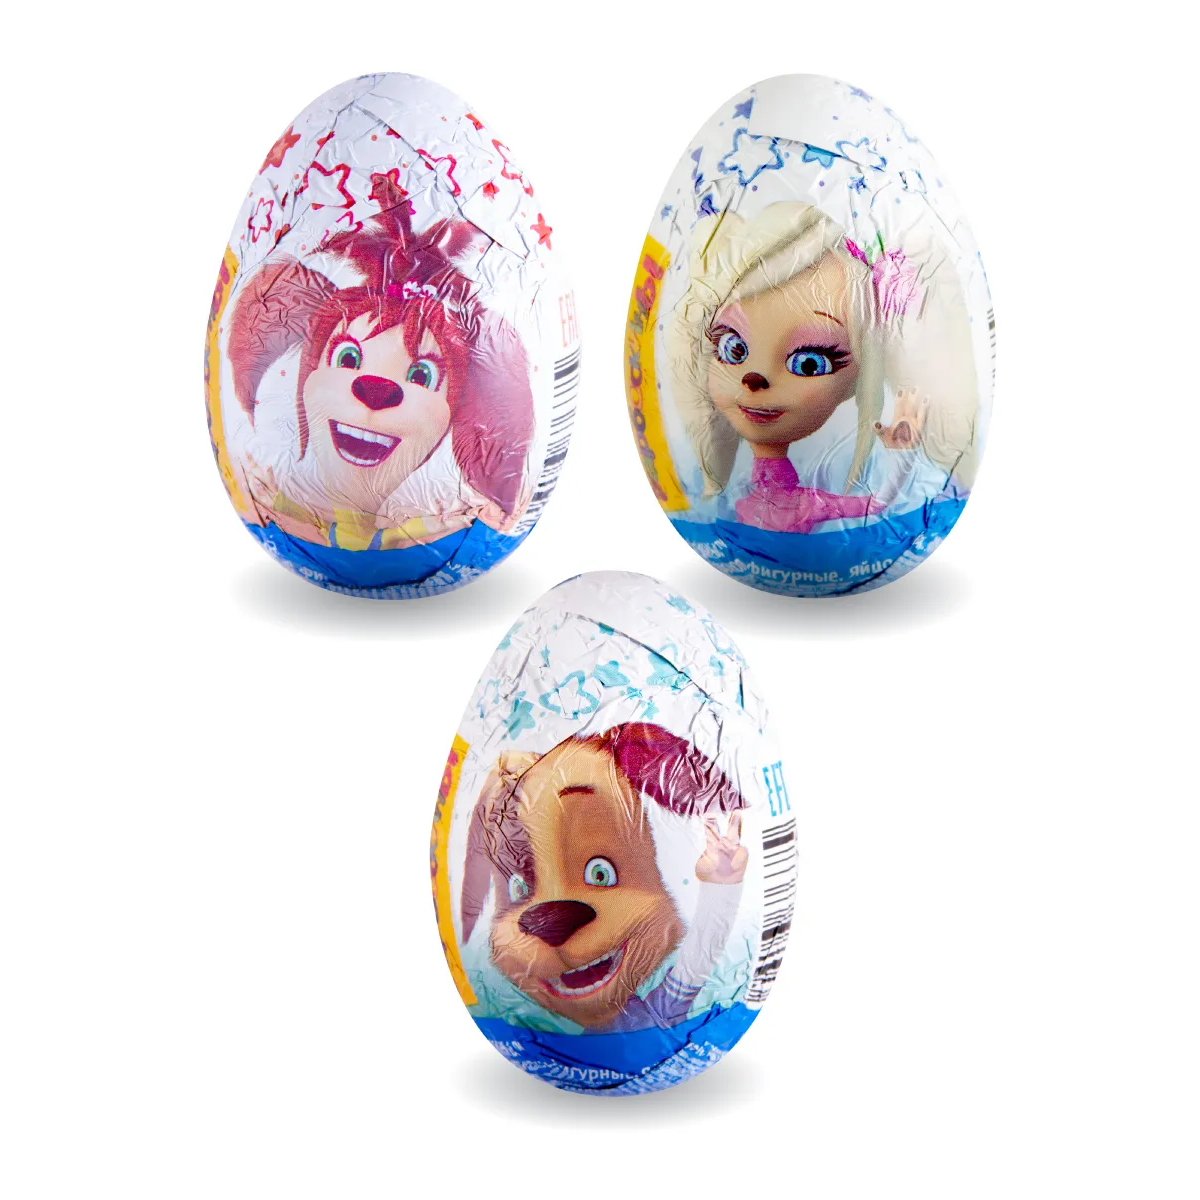 Шоколадное яйцо Сладкая сказка Барбоскины, с игрушкой, 20 г, в ассортименте яйцо из пенопласта 7 см